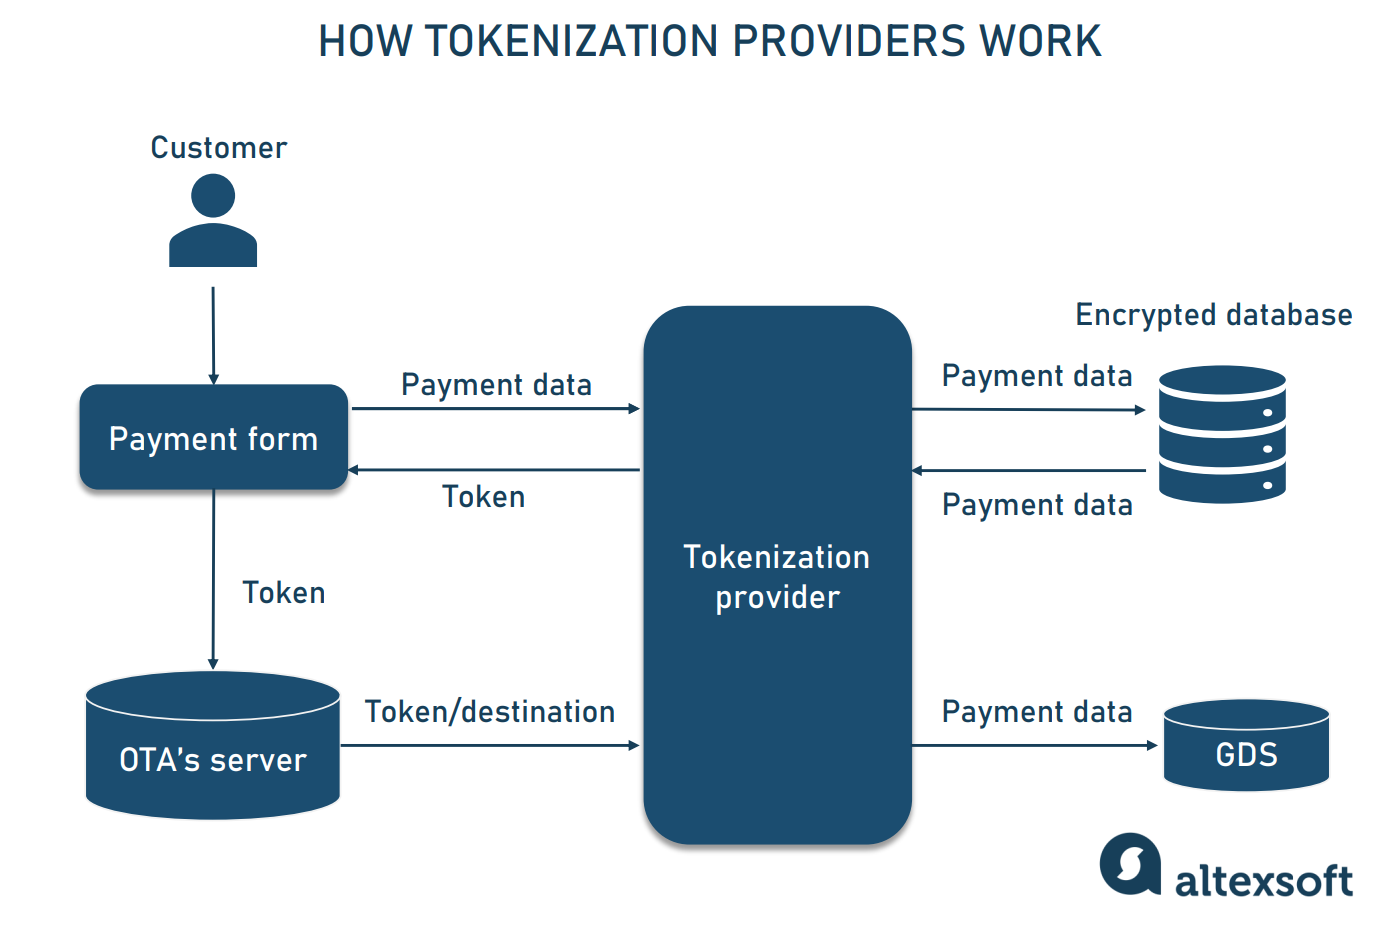 How tokemization services work